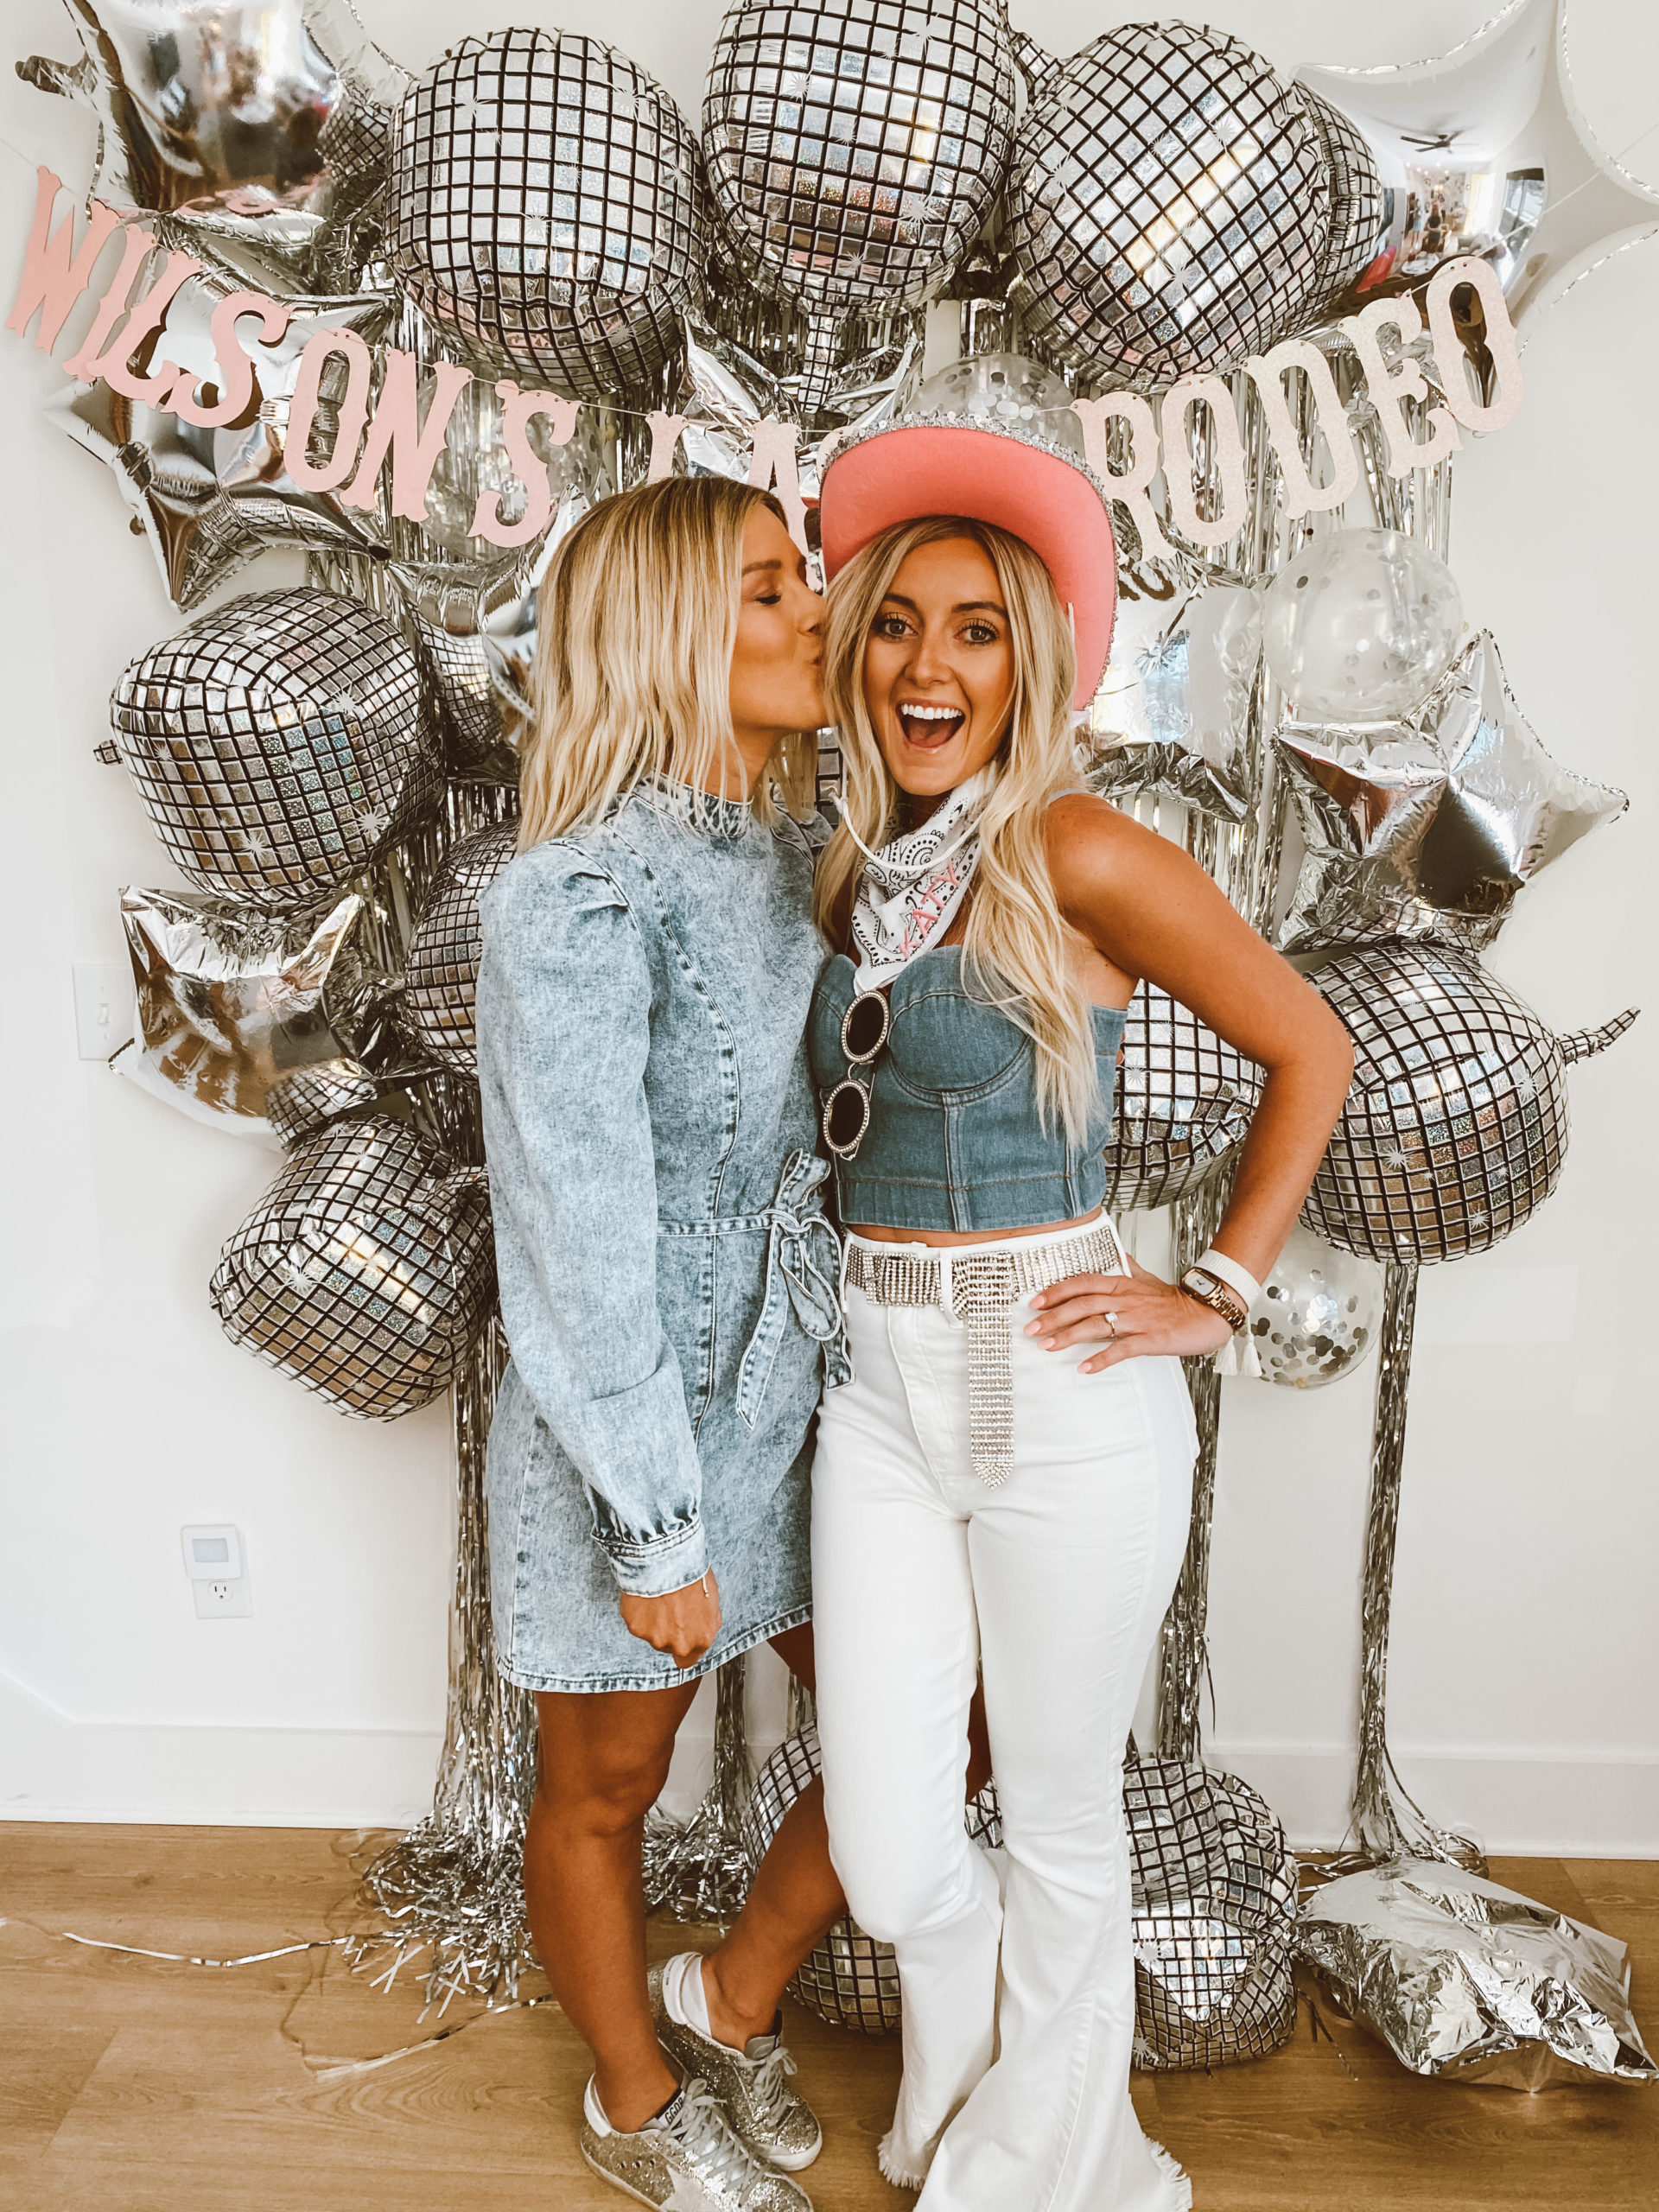 Nashville Bachelorette Party Recap | So Sage Blog - Travel